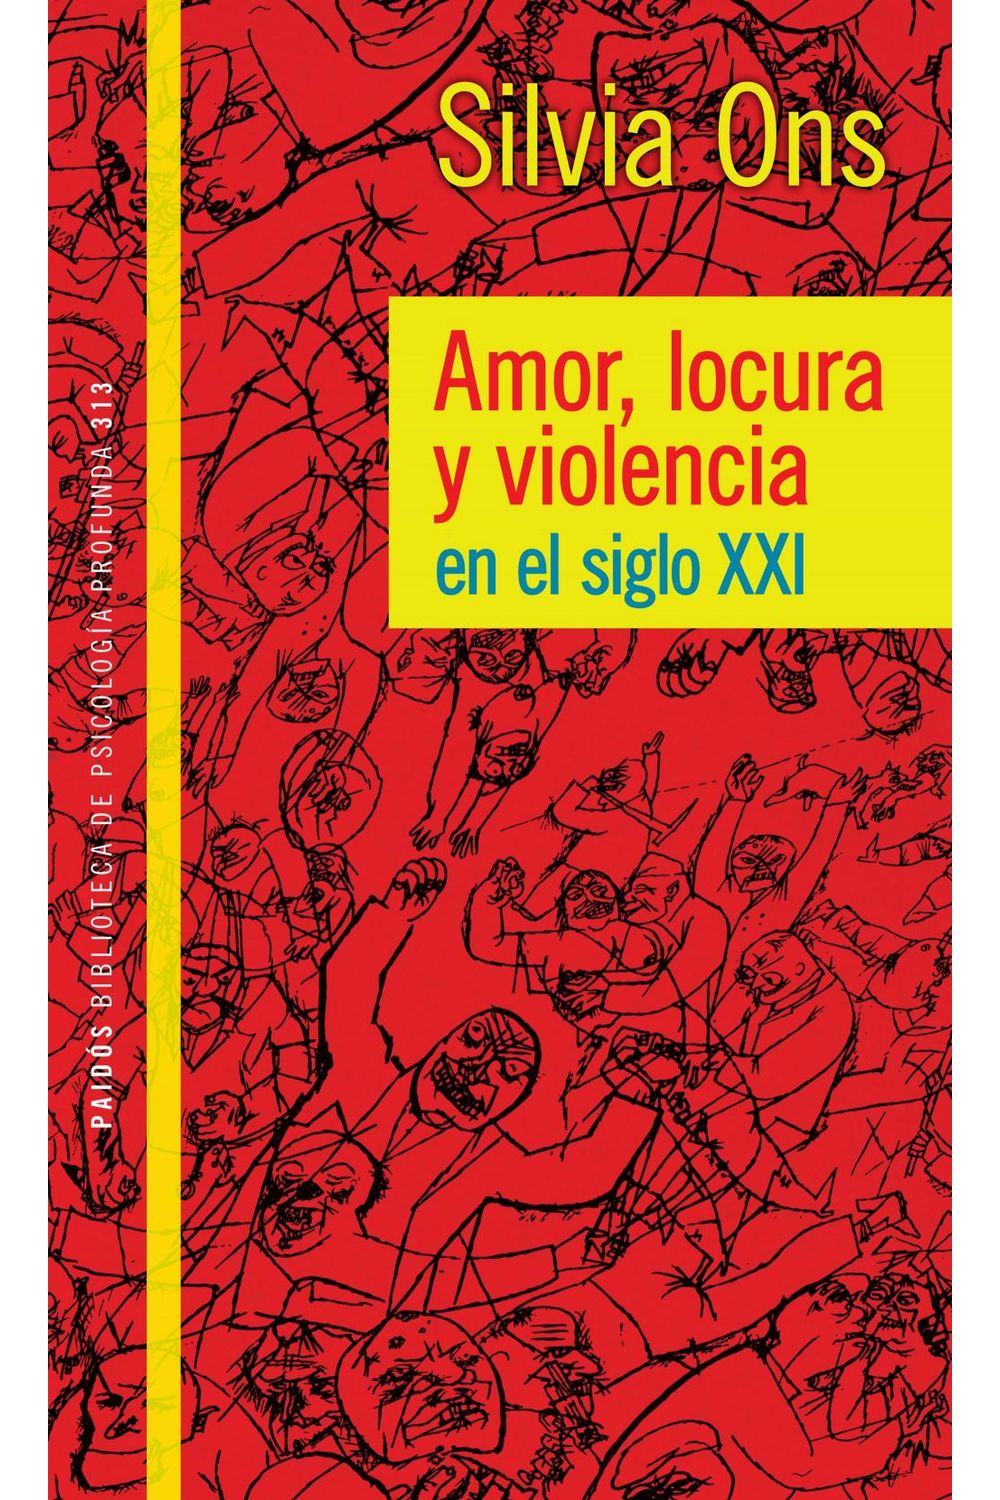 lib-amor-locura-y-violencia-en-el-siglo-xxi-grupo-planeta-argentina-9789501293500